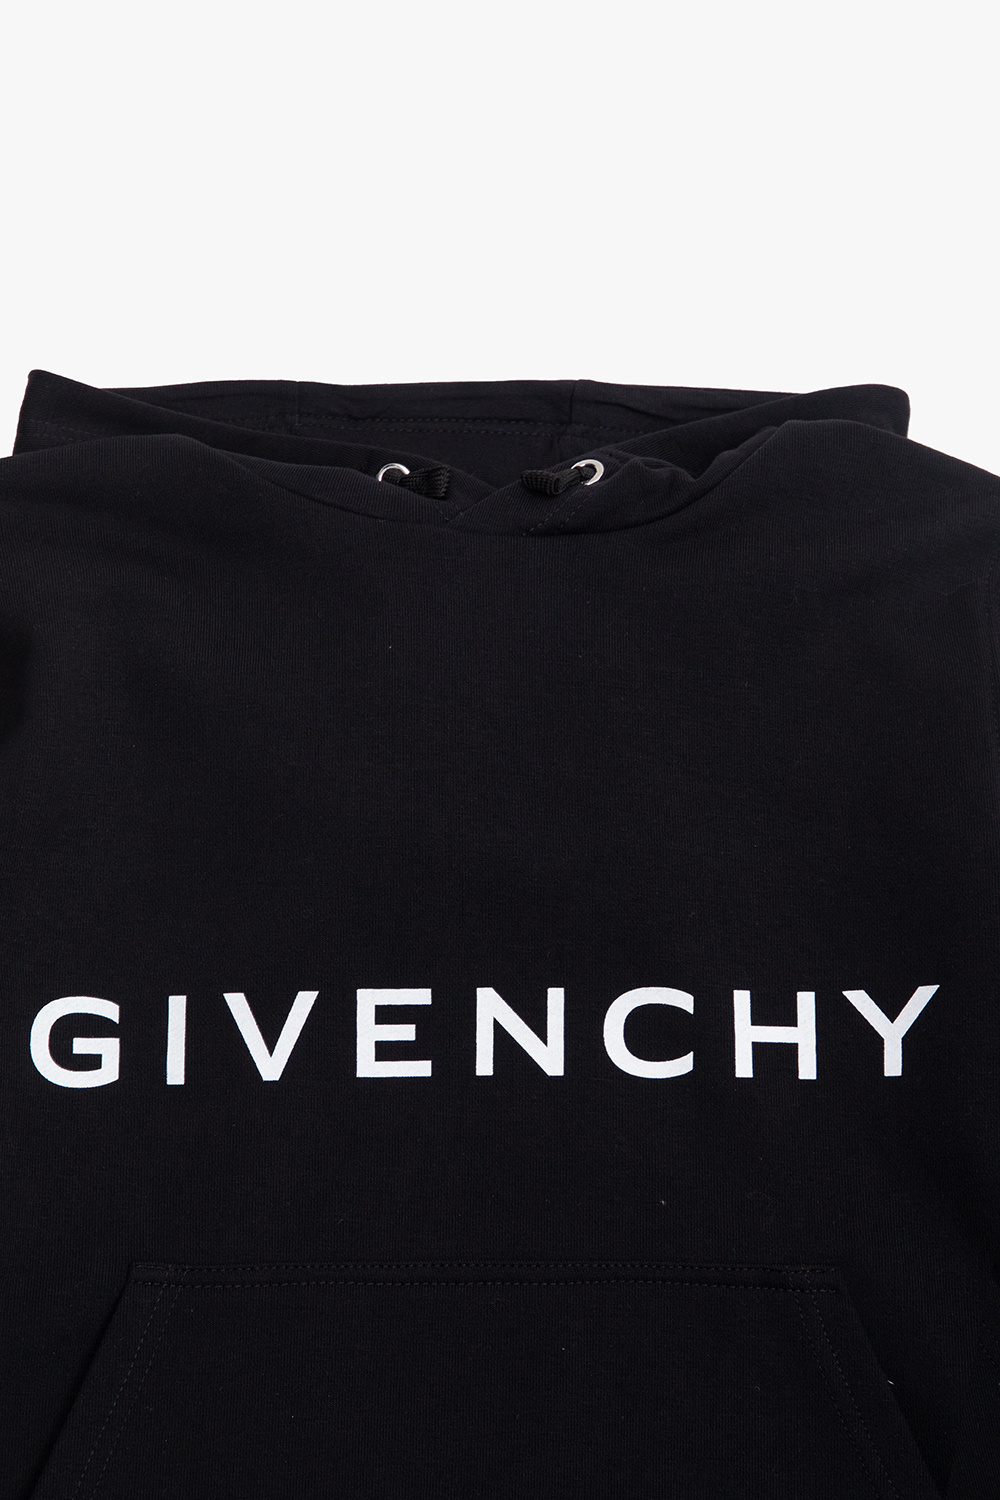 Givenchy Kids Еще товары для детей бренда Givenchy